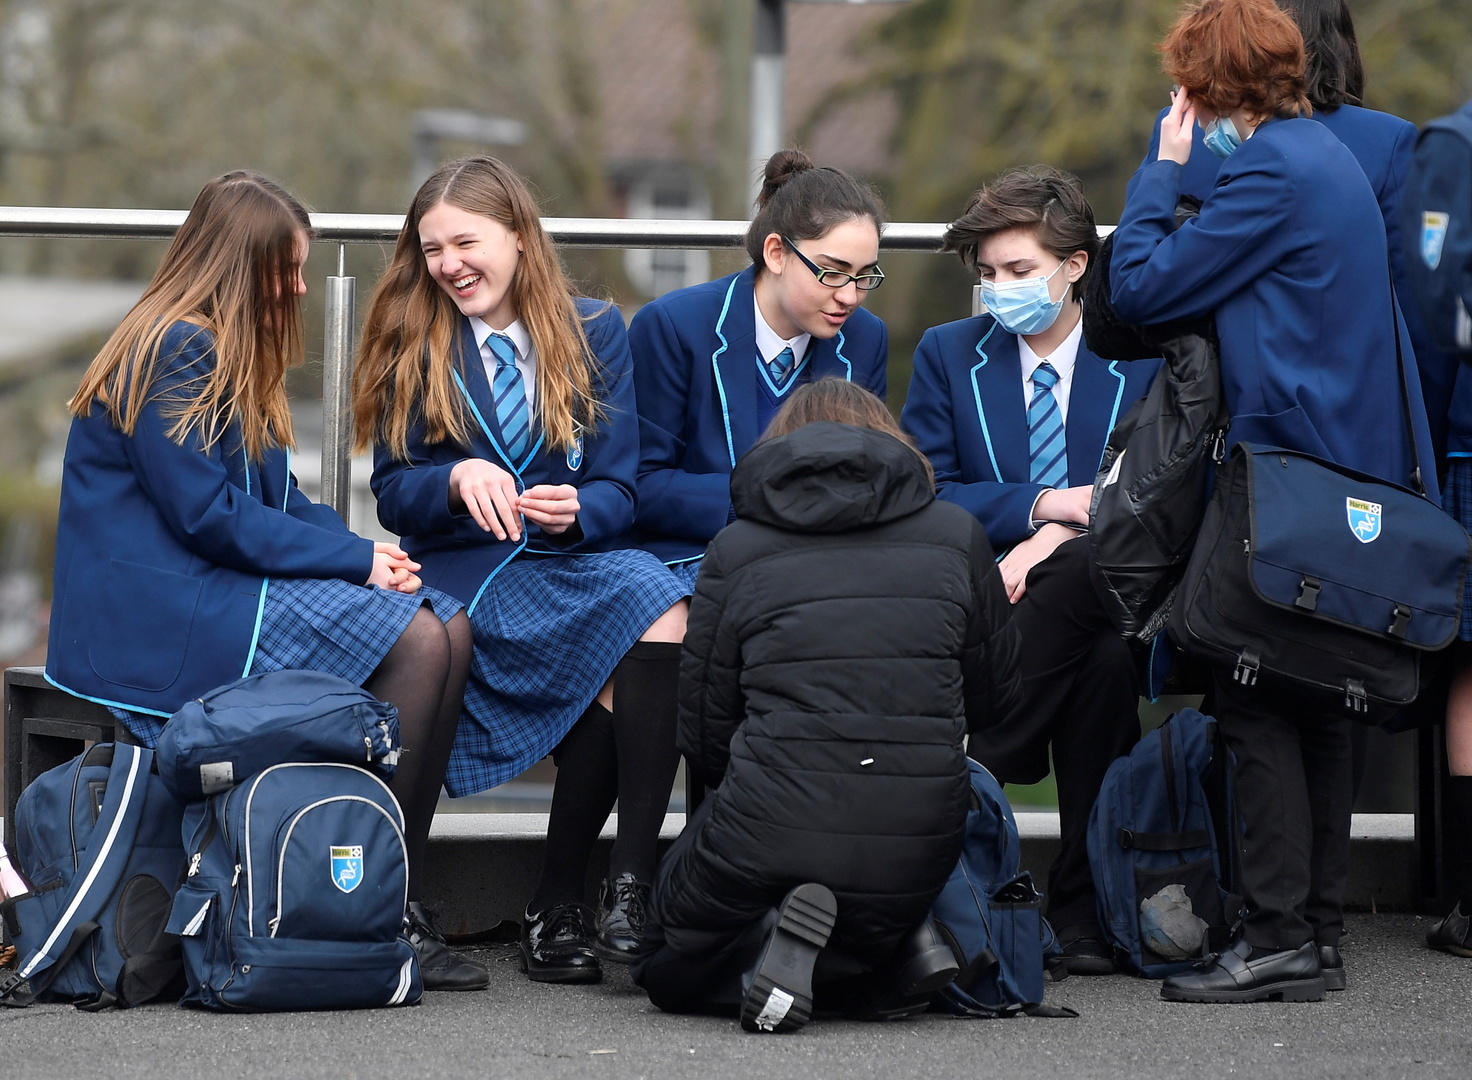 بريطانيا.. صدمة بالحكومة بعد أنباء عن انتهاكات جنسية في المدارس